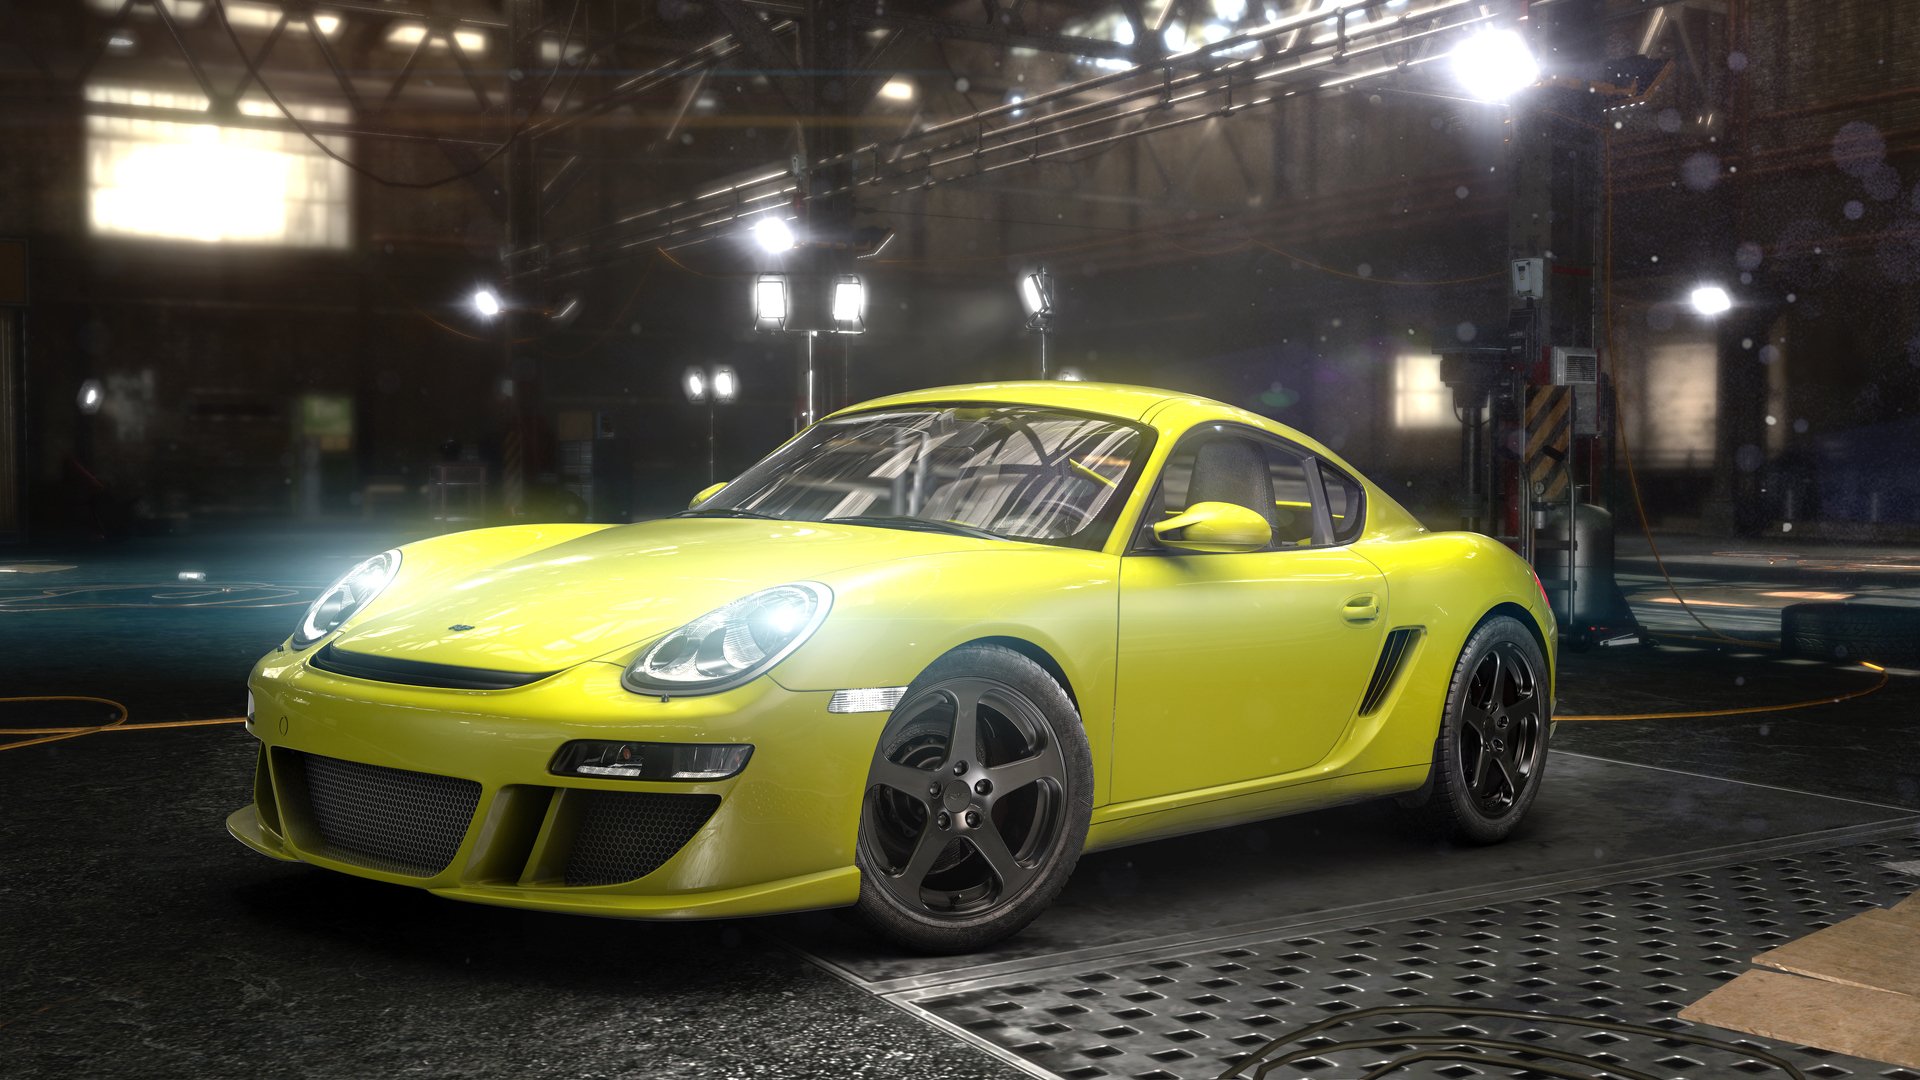 The Crew - nová závodní hra od tvůrců Driver a Test Drive ukazuje první obrázky ze hry